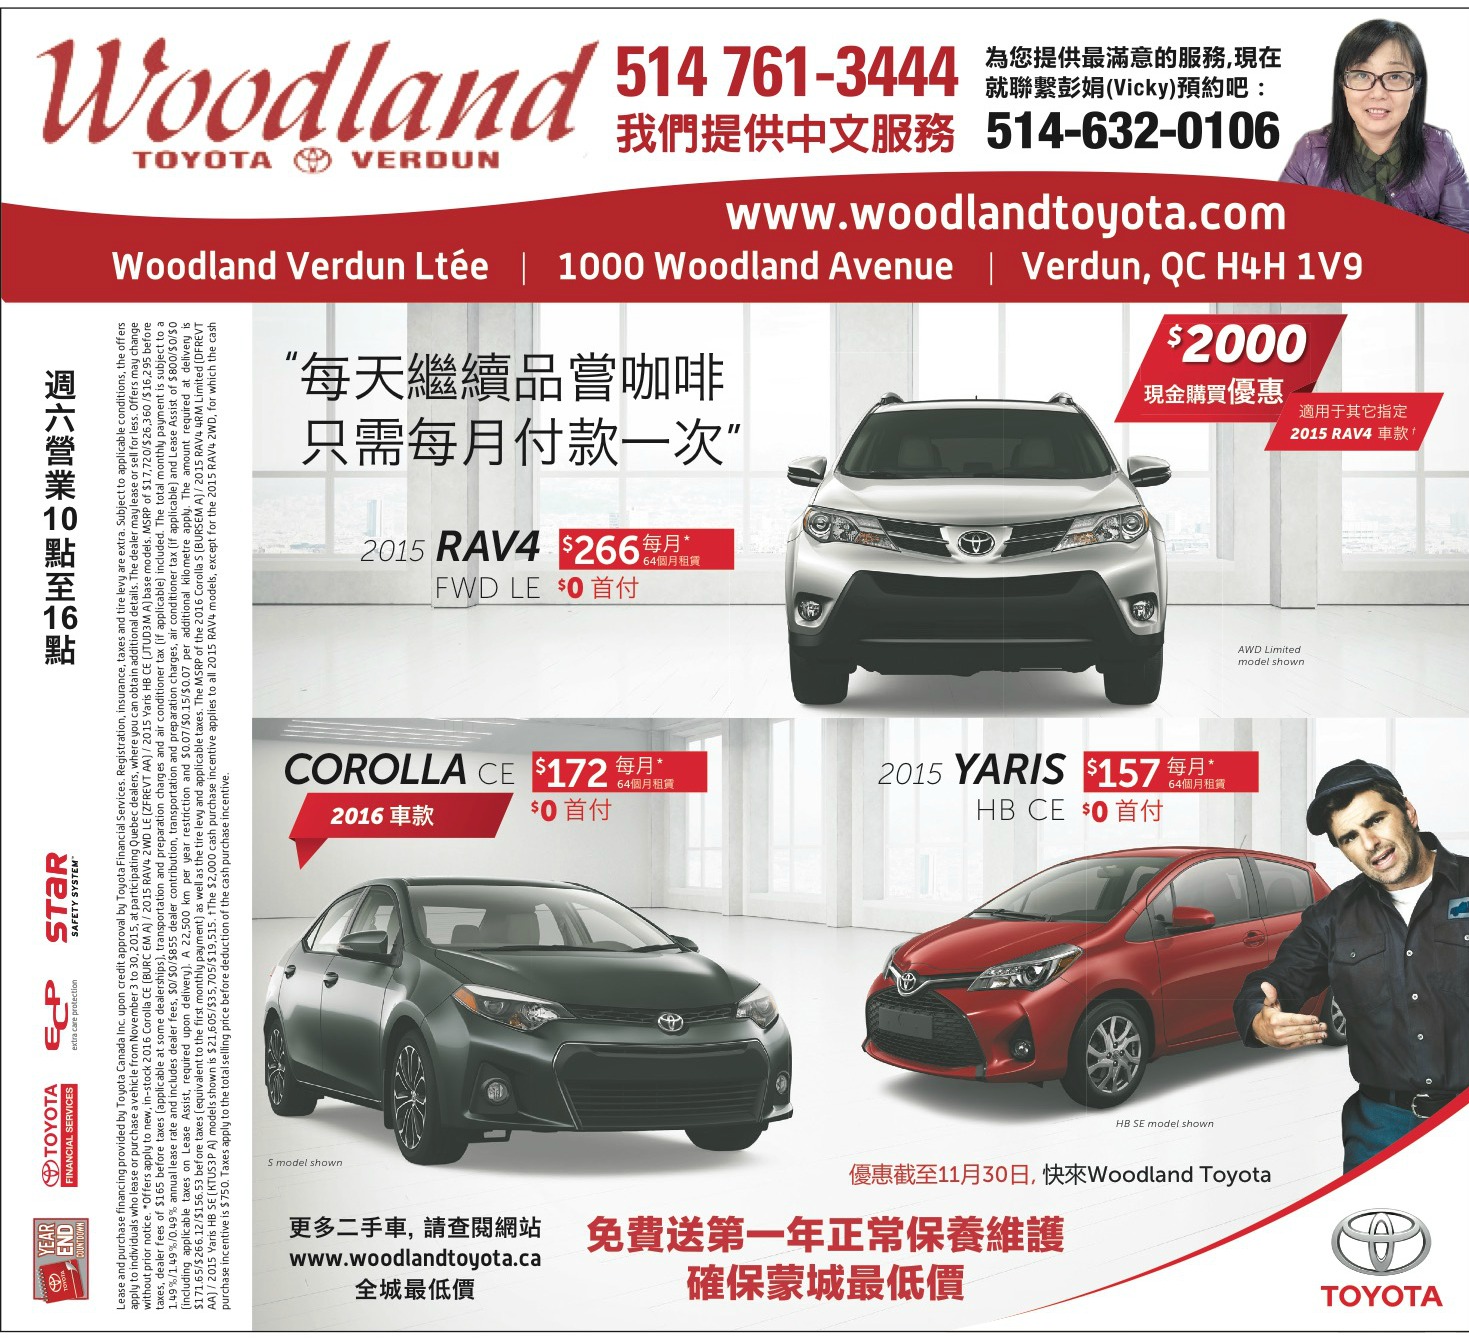 蒙特利尔Woodland Toyota车行提供中文服务免费送第一年正常保养维护  image